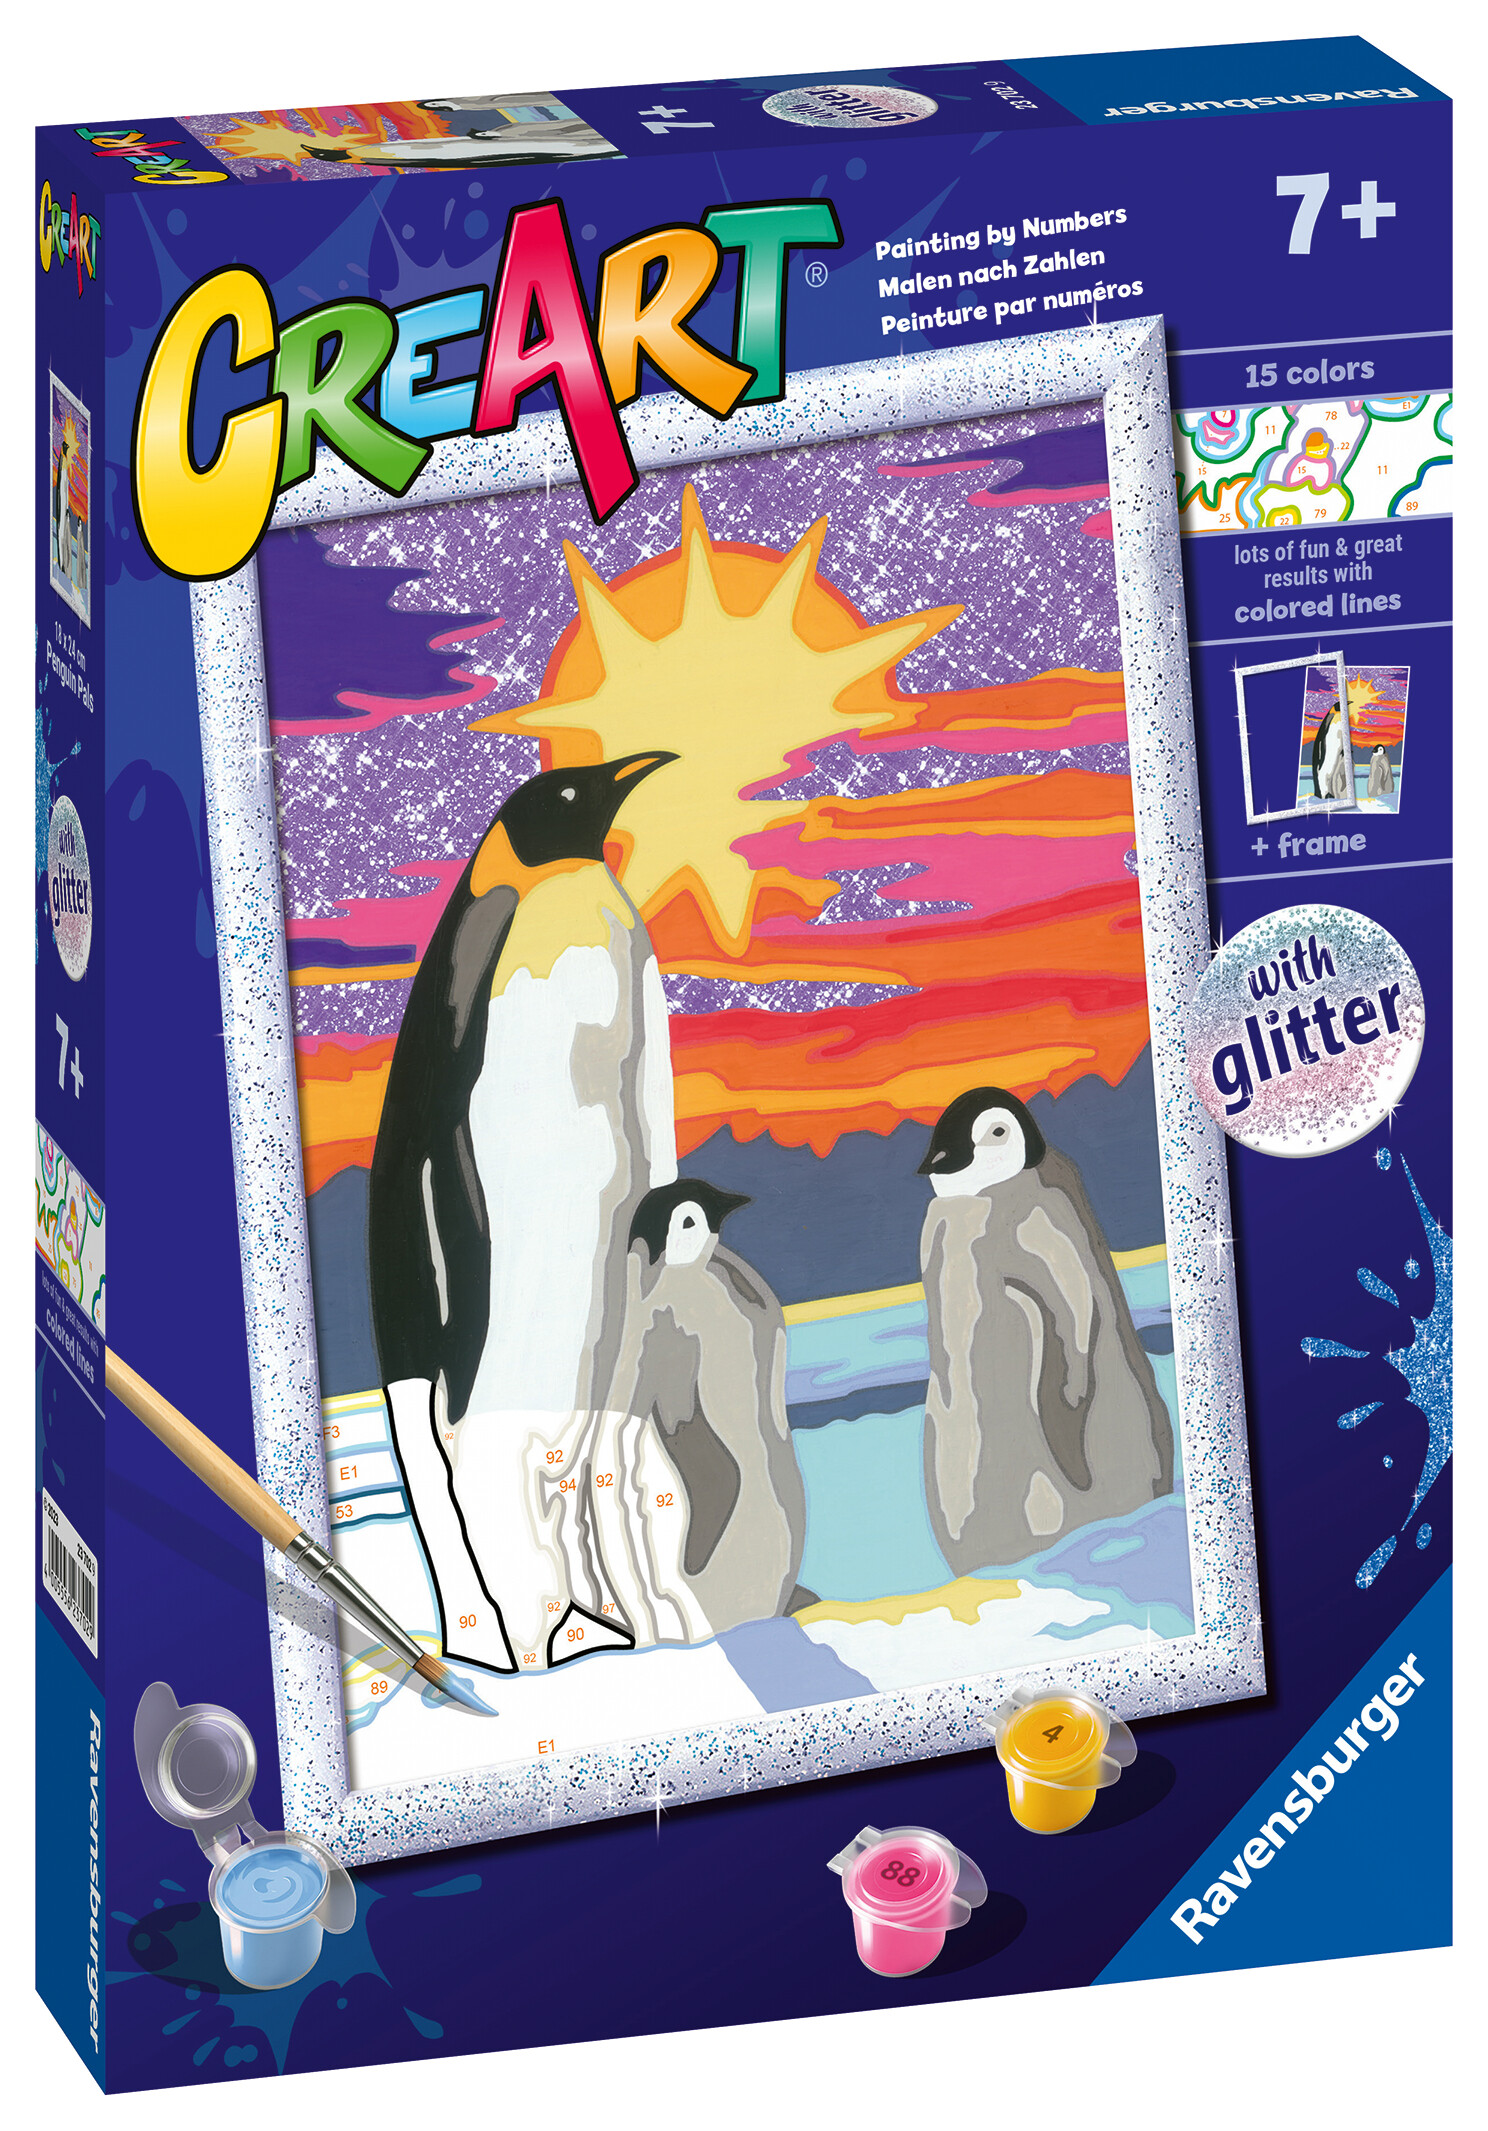 Ravensburger - creart serie d: pinguini, kit per dipingere con i numeri, contiene una tavola prestampata, pennello, colori e accessori, gioco creativo per bambini 9+ anni - RAVENSBURGER